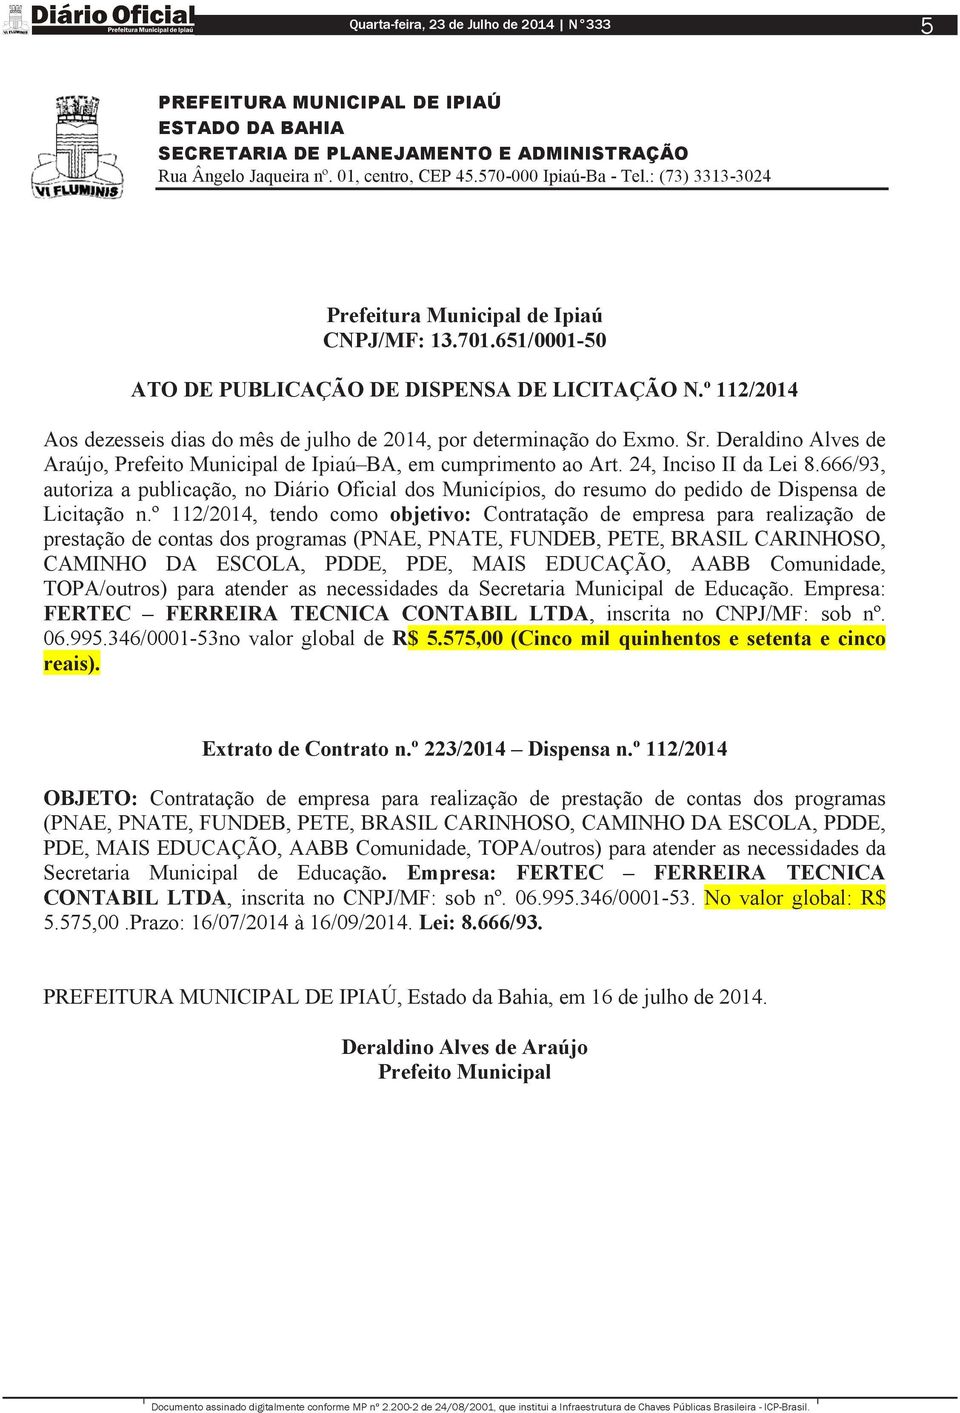 Deraldino Alves de Araújo, de Ipiaú BA, em cumprimento ao Art. 24, Inciso II da Lei 8.666/93, autoriza a publicação, no Diário Oficial dos Municípios, do resumo do pedido de Dispensa de Licitação n.